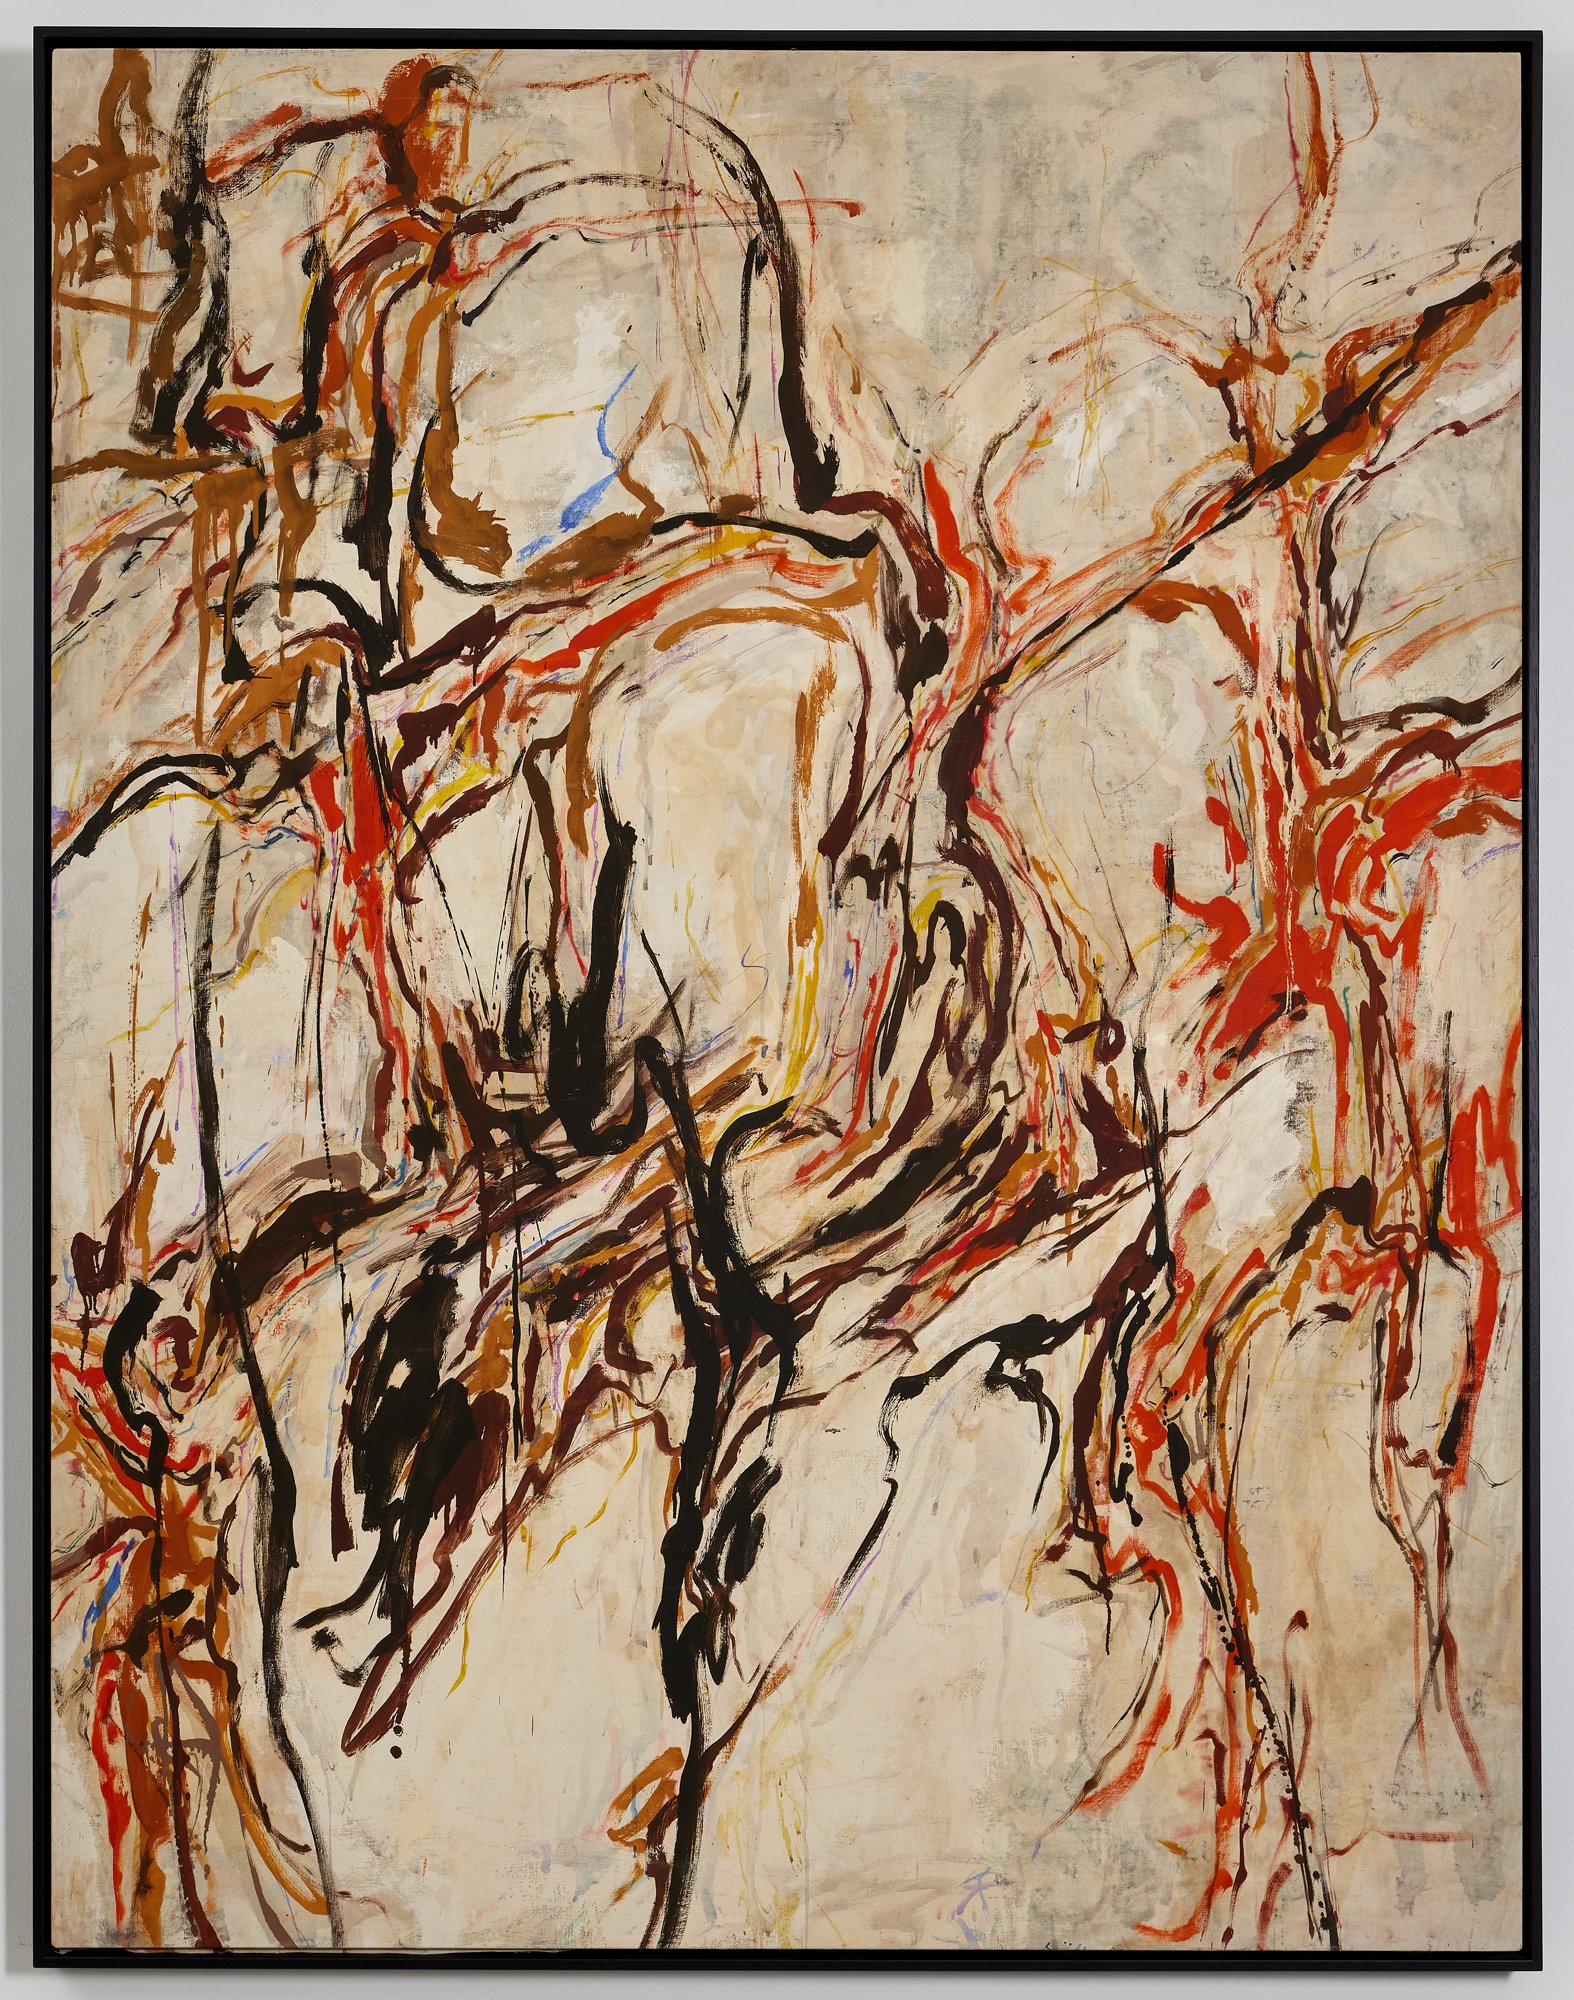 Luigi Boille, La Conquête, 1958, oil on canvas, 190 x 147 cm (LBo303447)_A